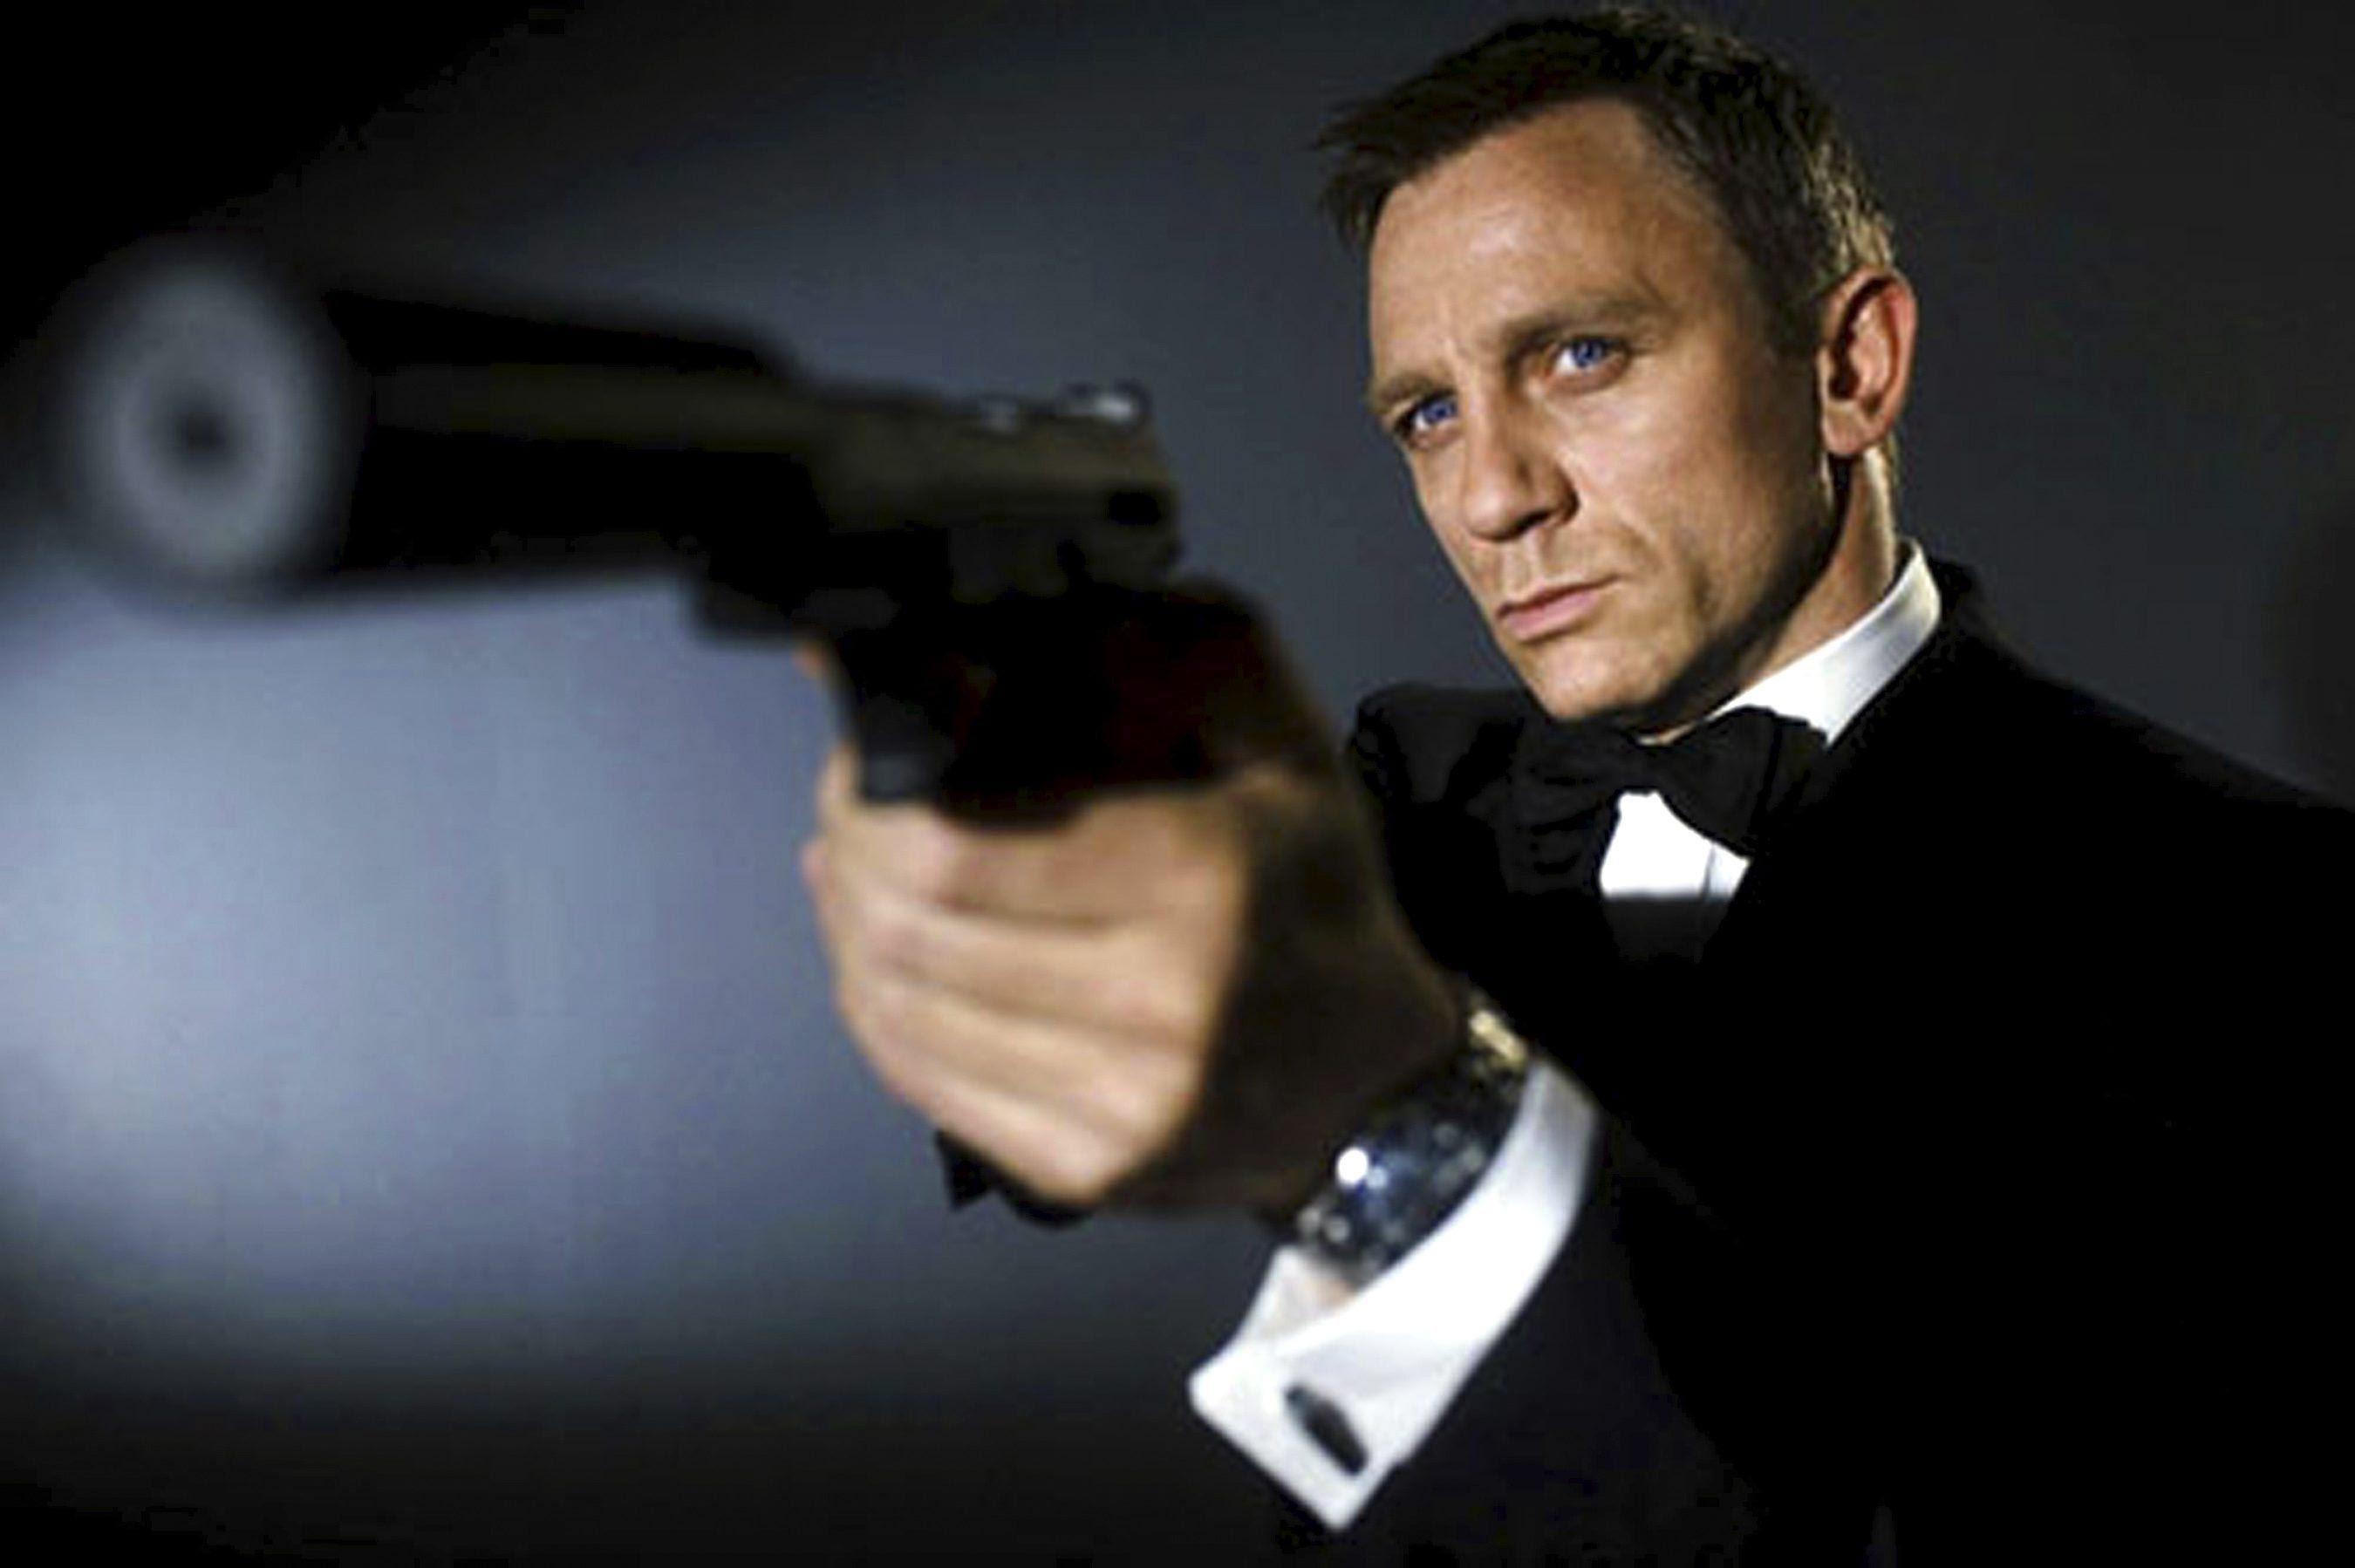 James Bond: Spectre Wallpaper, Picture, Image